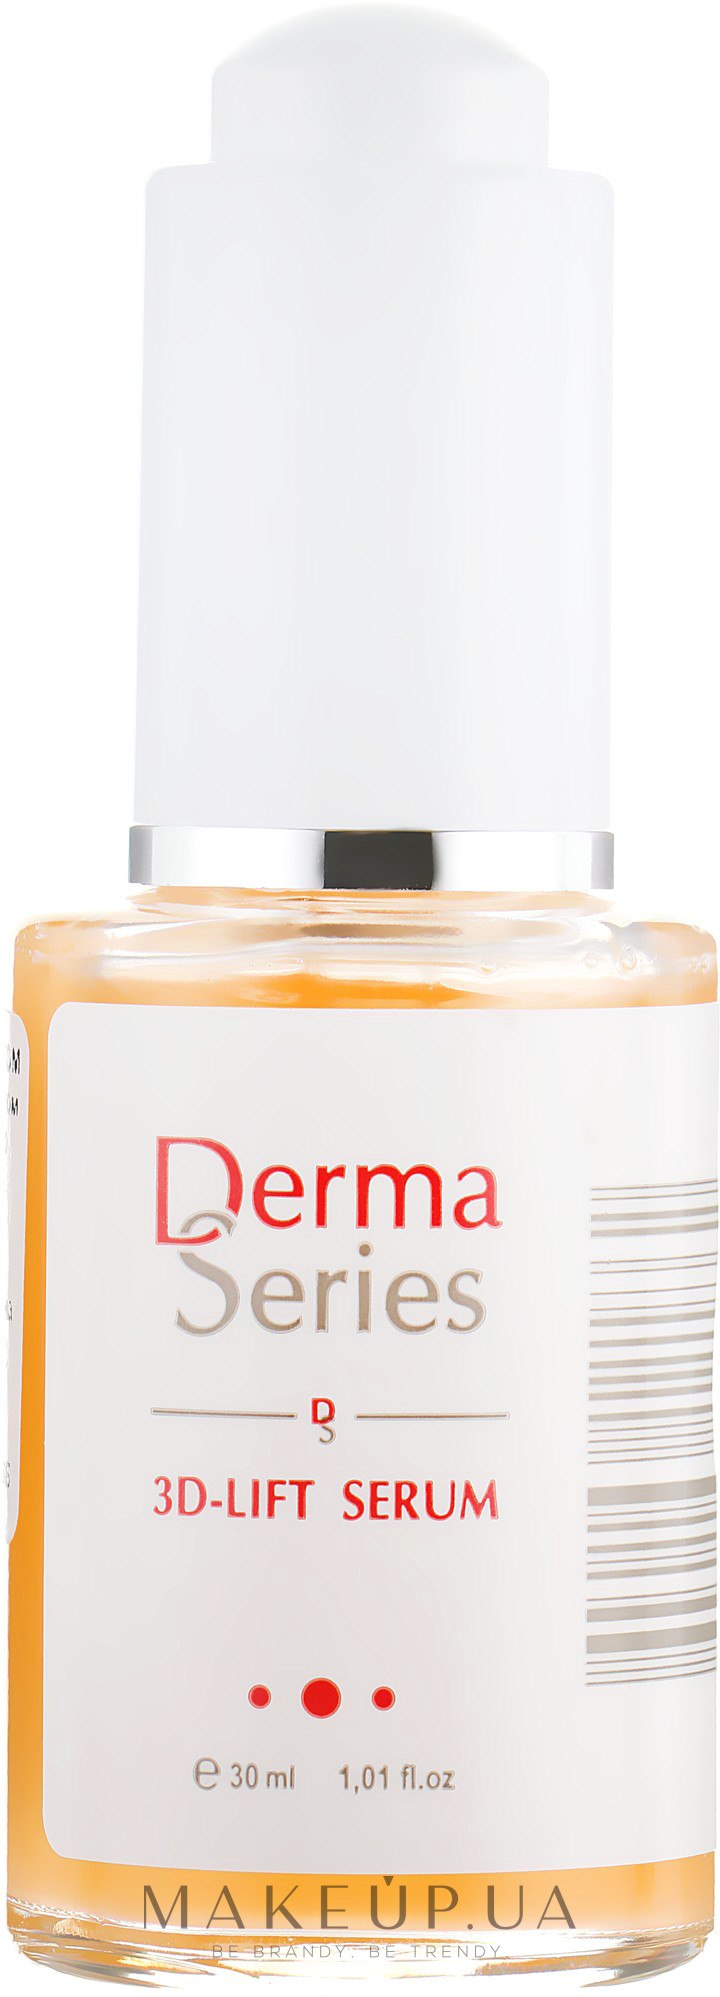 Зміцнювальна сироватка з ефектом 3D-ліфтинга - Derma Series 3D-Lift Serum — фото 30ml